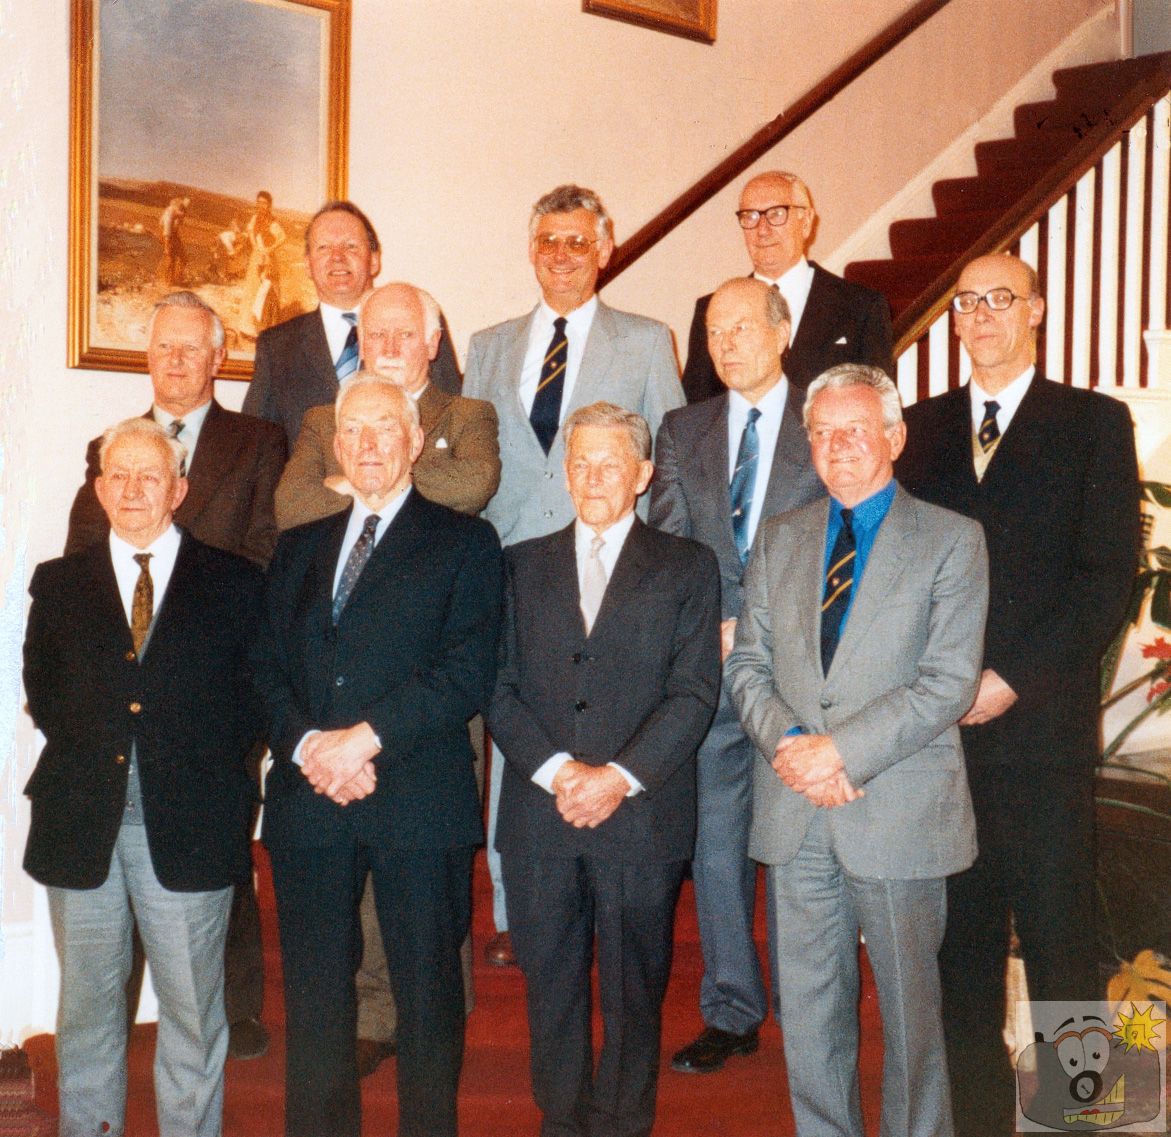 Class of '54 Reunion (1), 1987